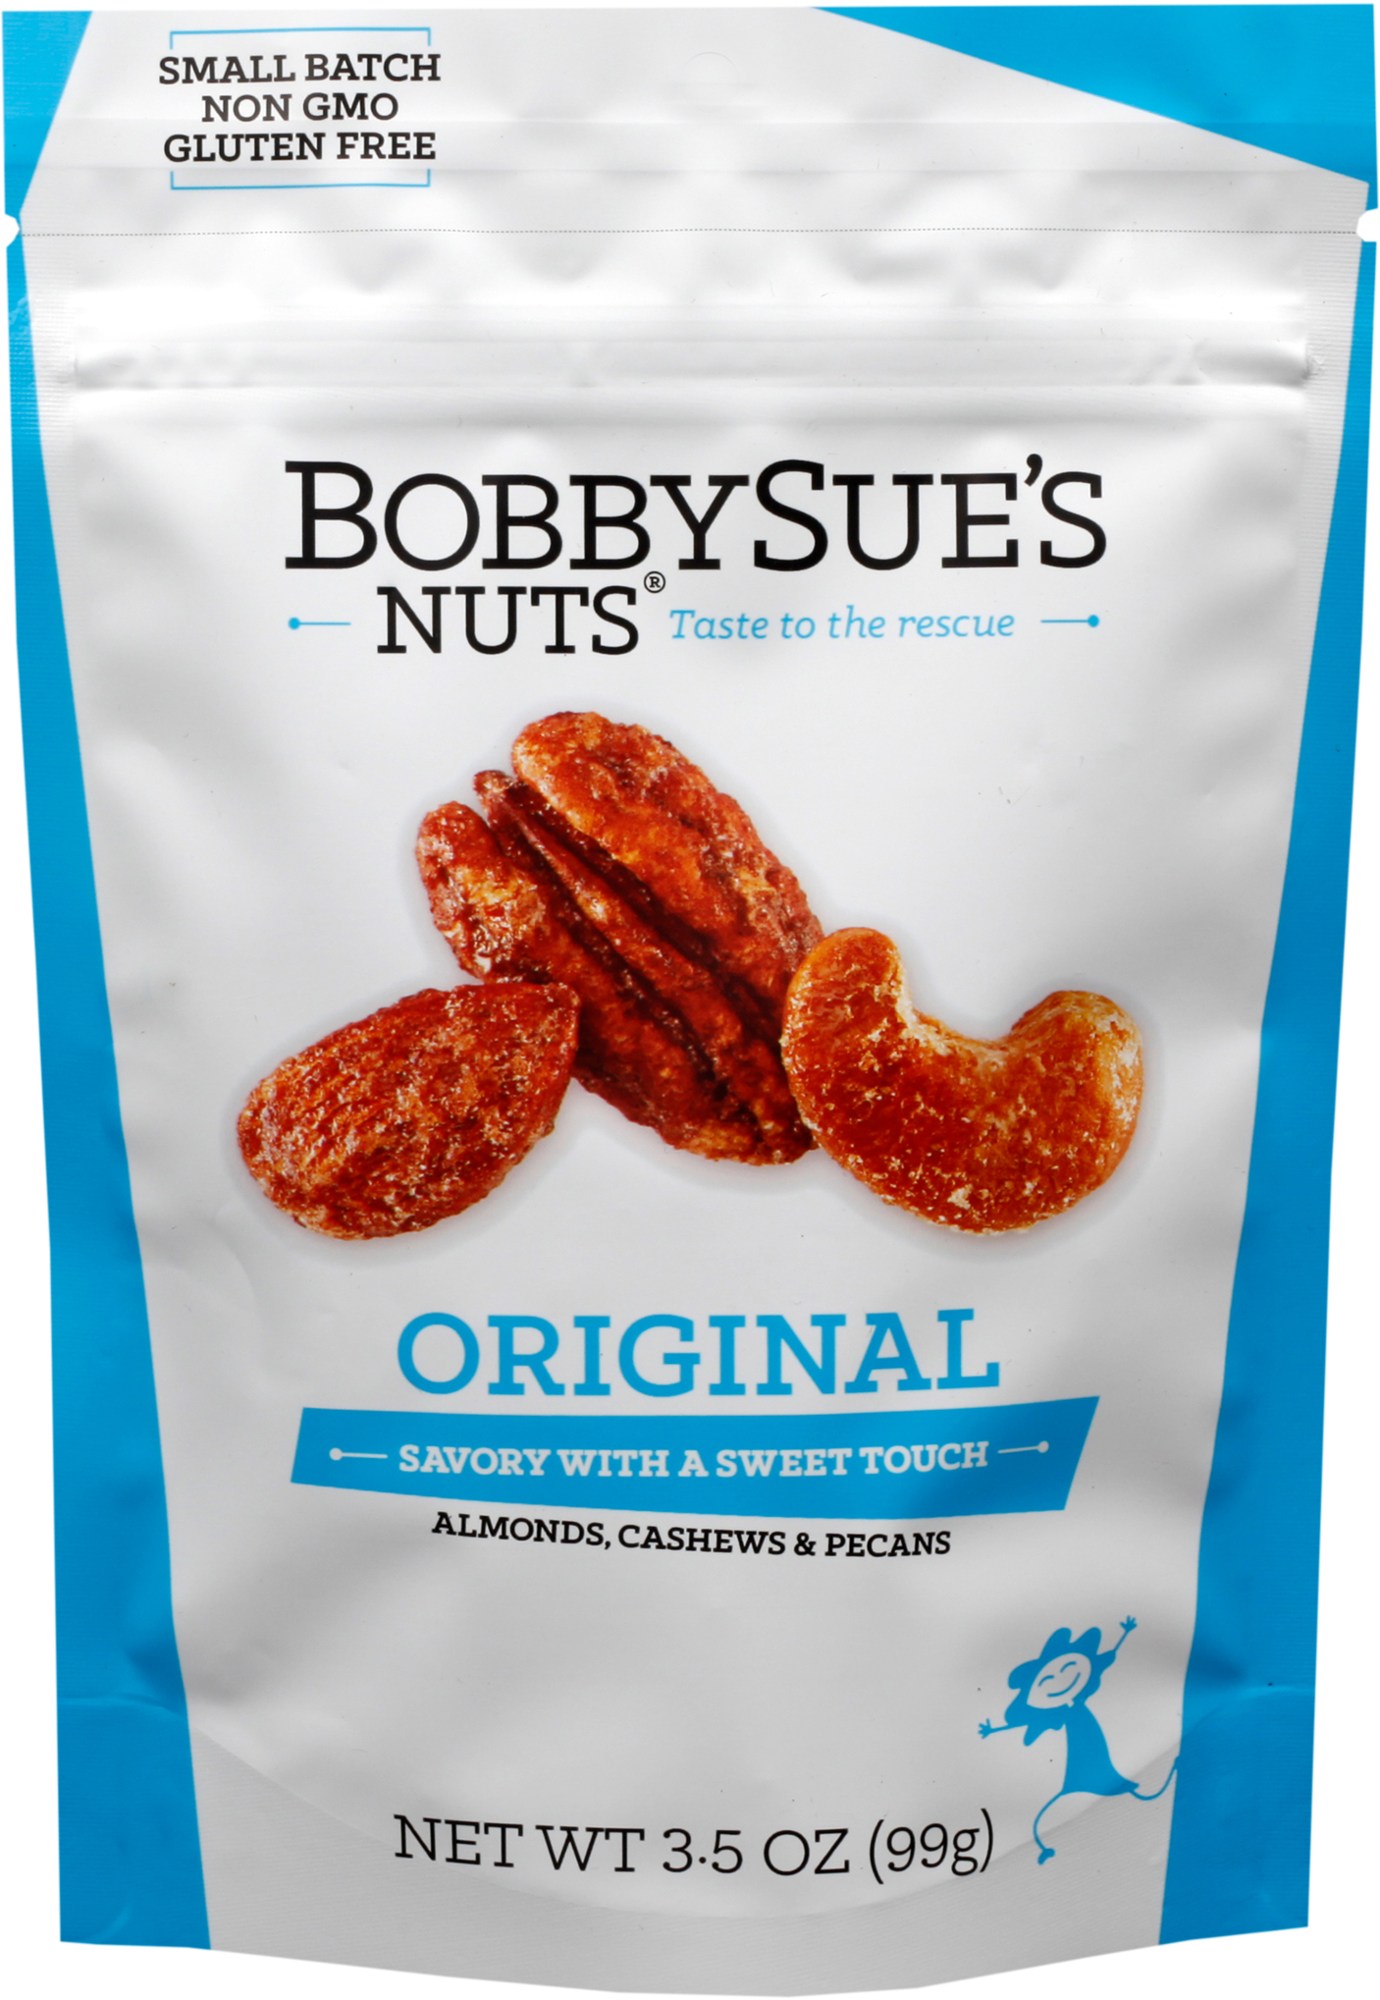 протеиновый батончик ореховый nuts миндаль пекан 12 шт х 40 г Мешочек со смешанными орехами - 3,5 унции. BobbySue's Nuts